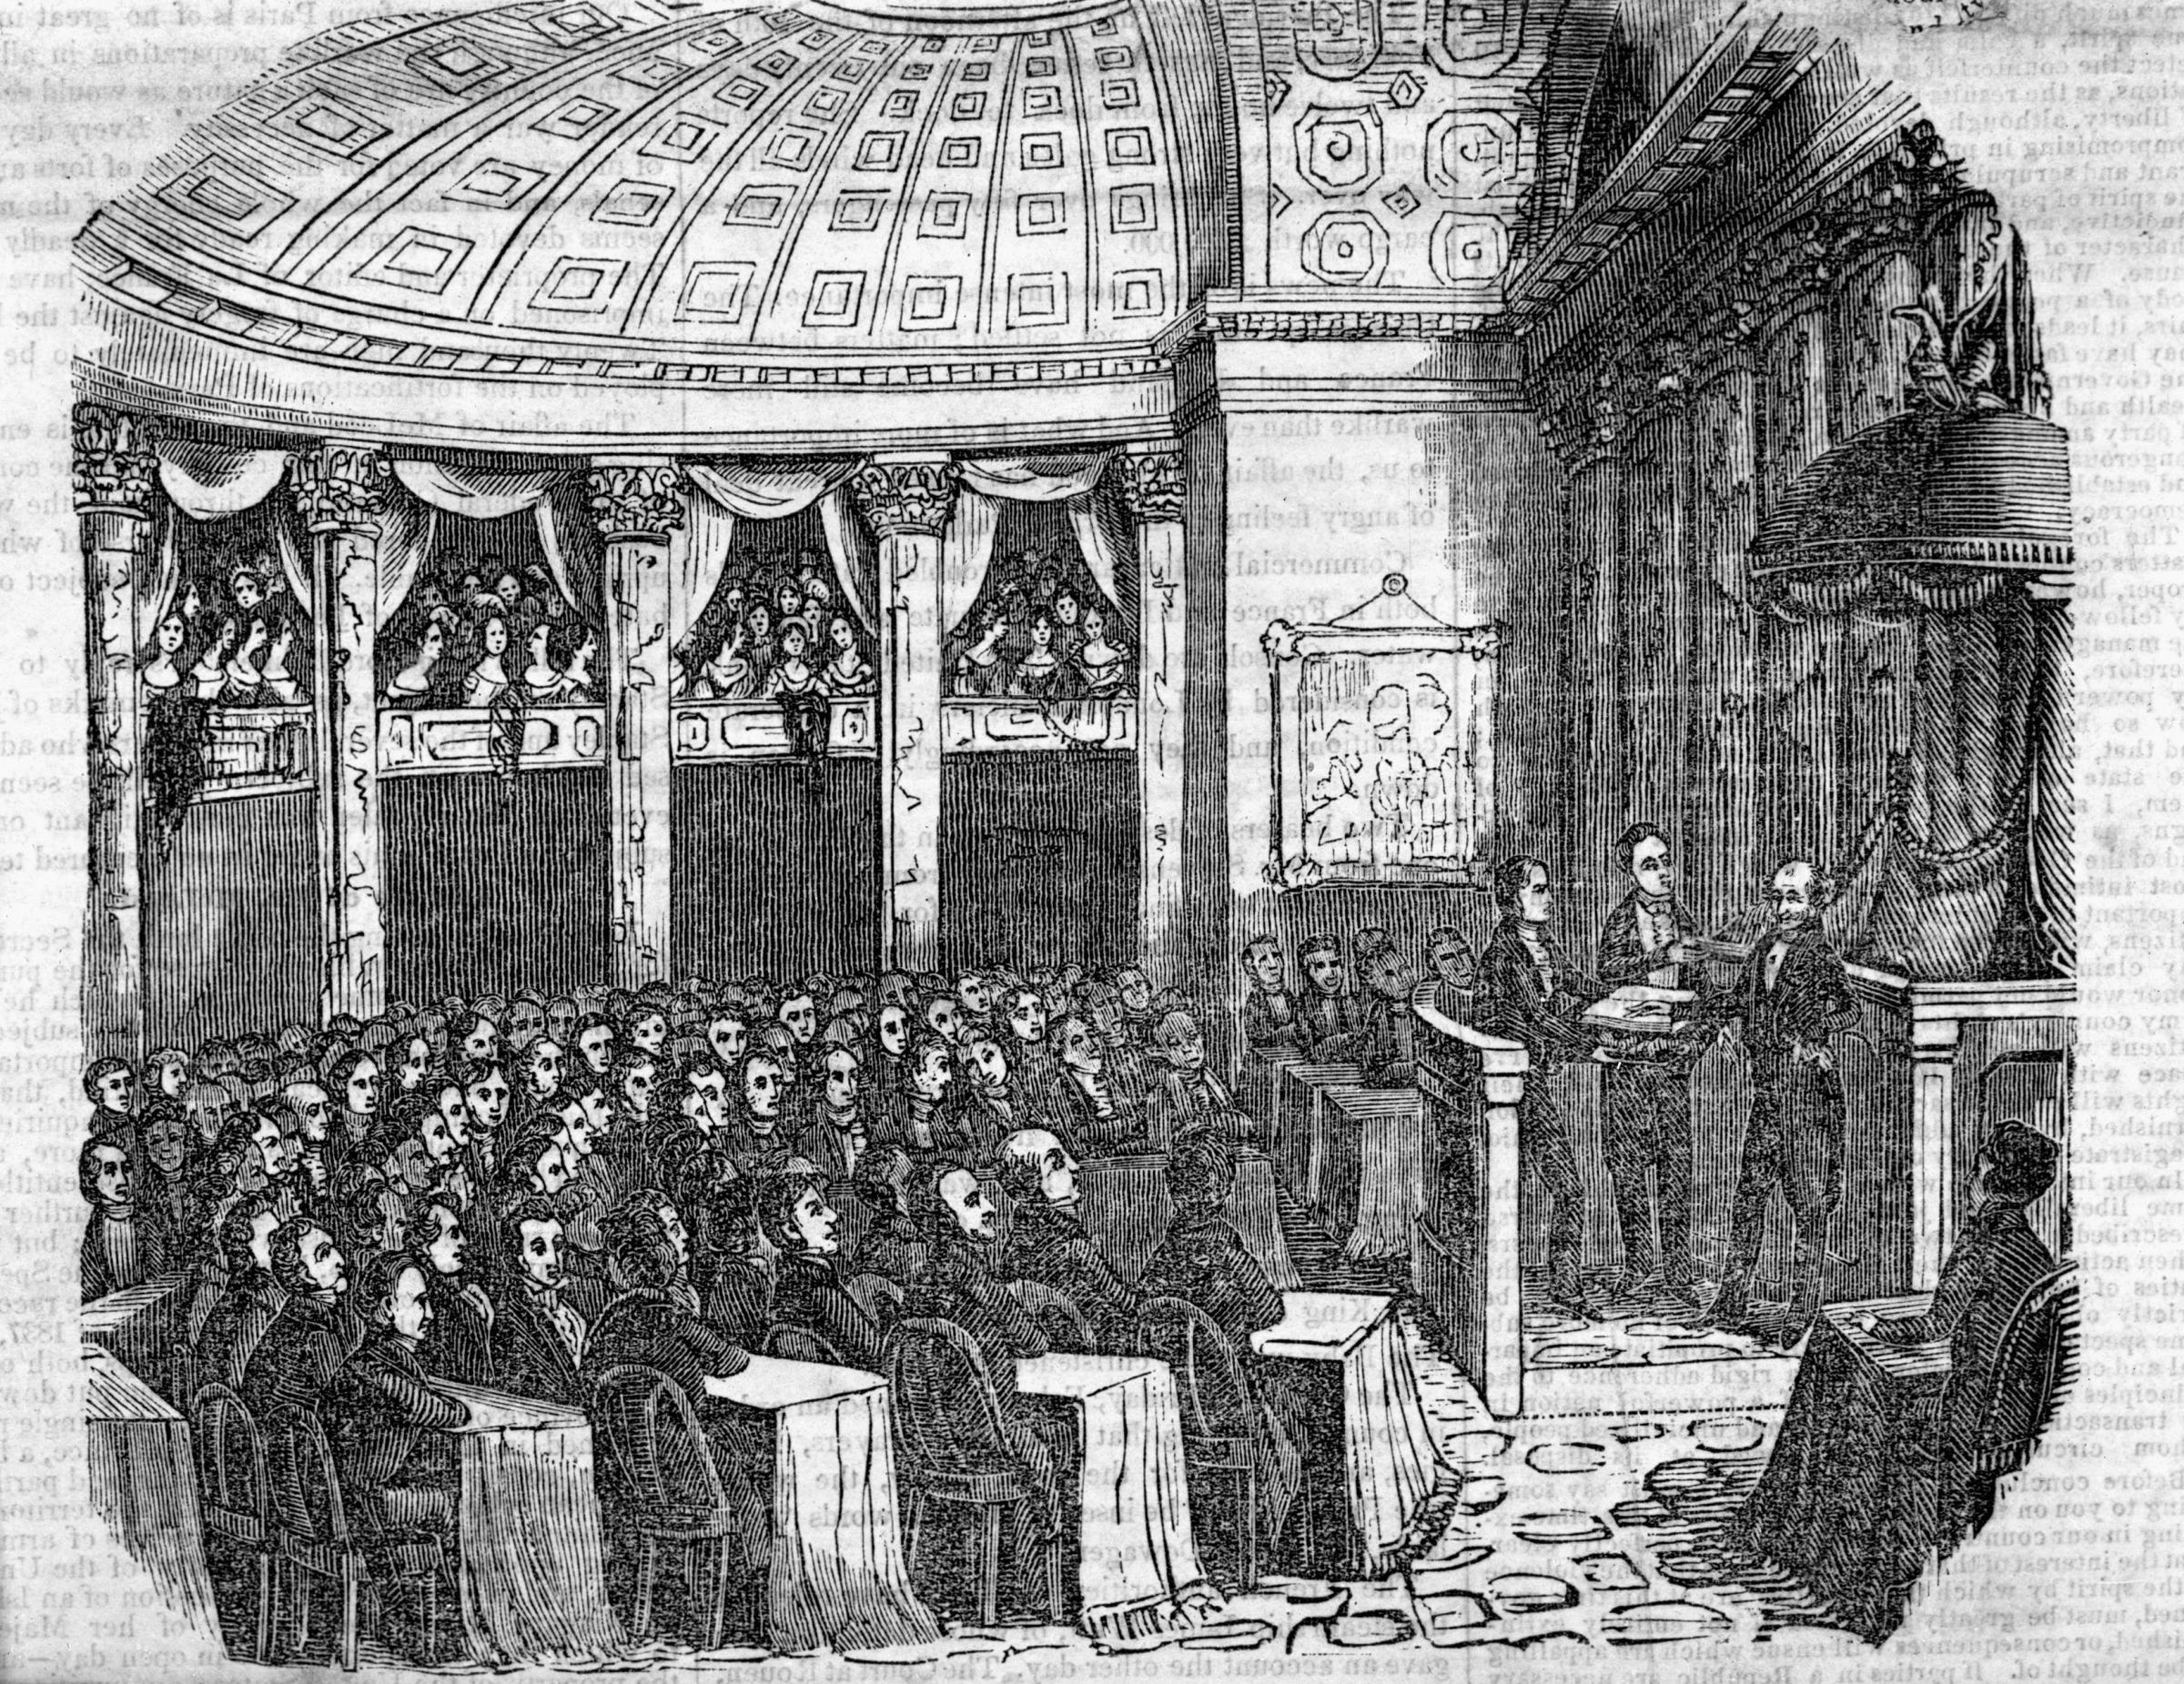 Inauguration of Martin Van Buren in the Senate Chamber, March 4, 1837.